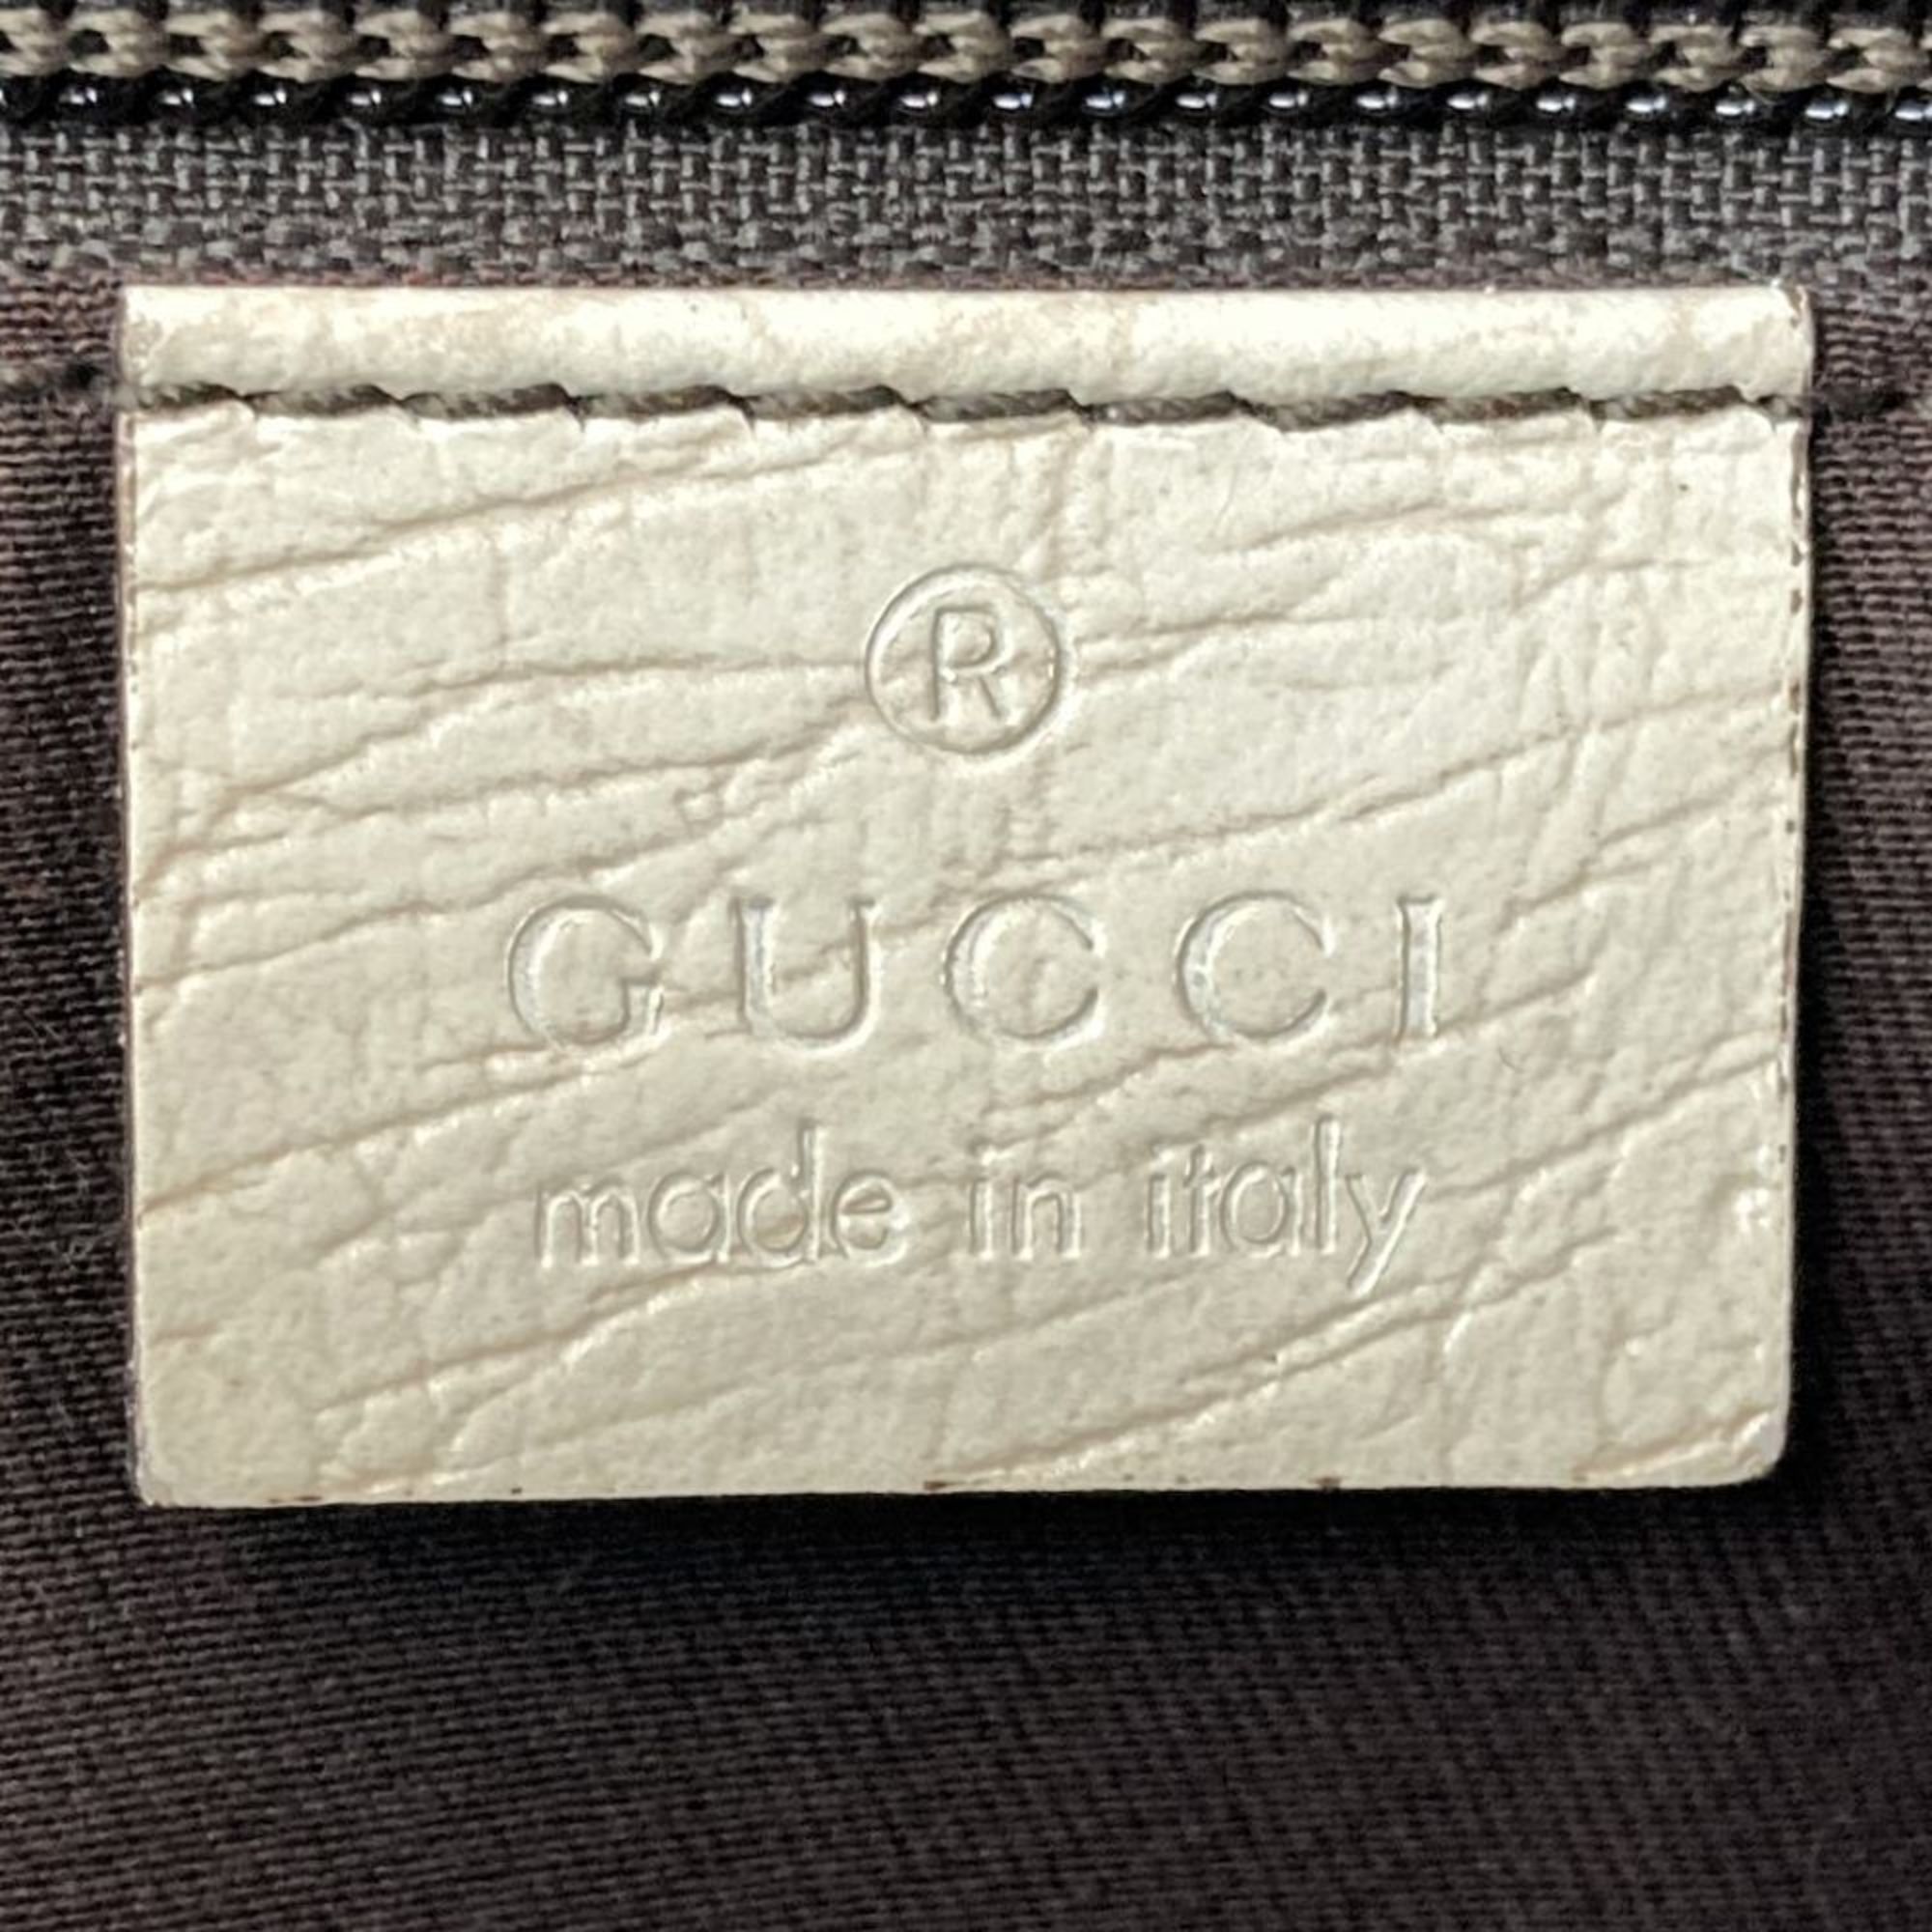 Gucci Tote Bag Beige Ivory White GG Supreme Leather Women's 181086 GUCCI